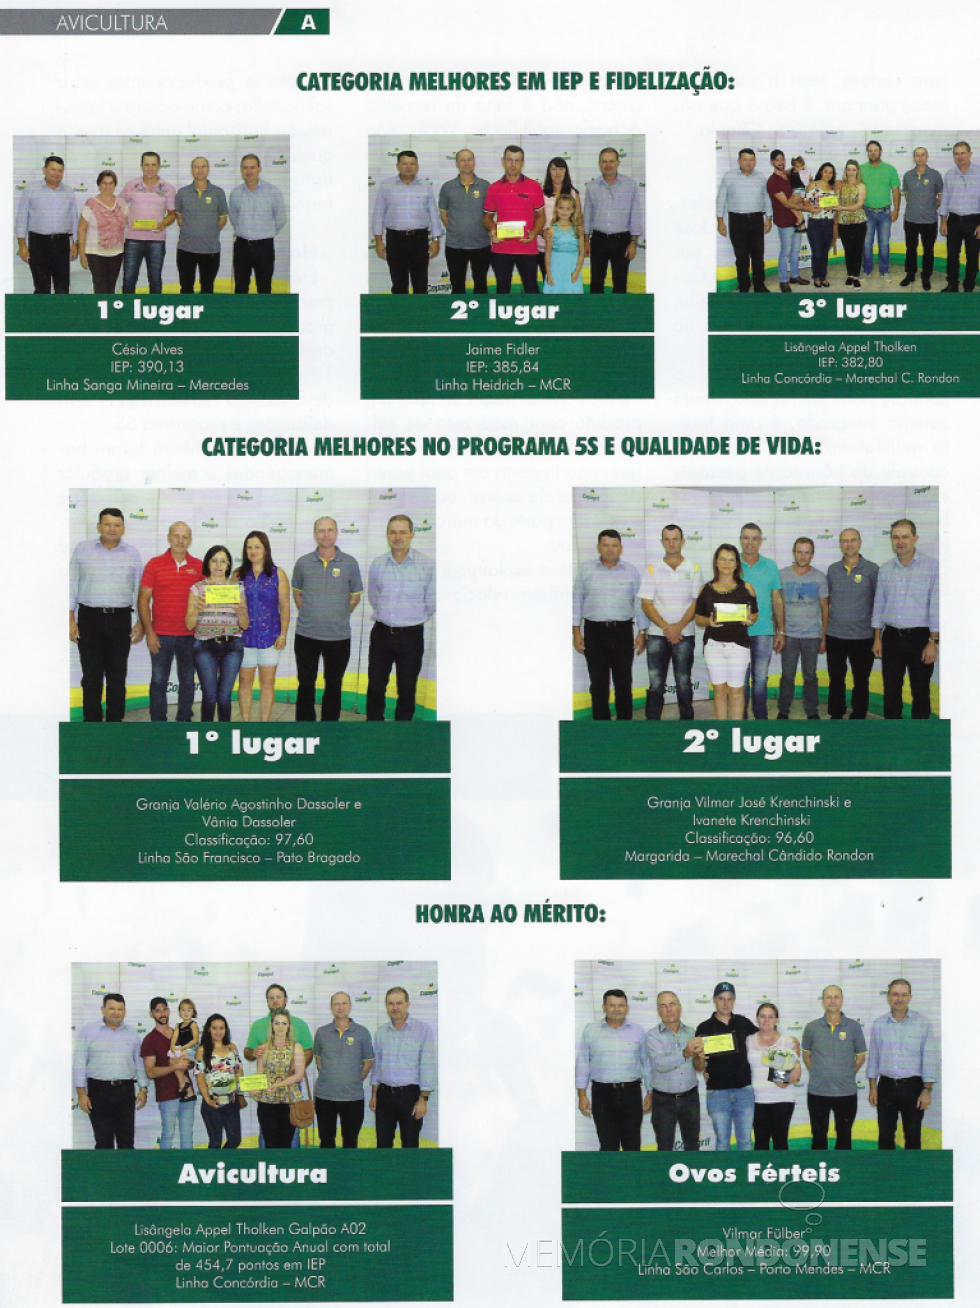 || Premiação dos associados da Copagril com destaque na avicultura. 
Imagem: Revista Copagril nº 100 - FOTO 11 - 